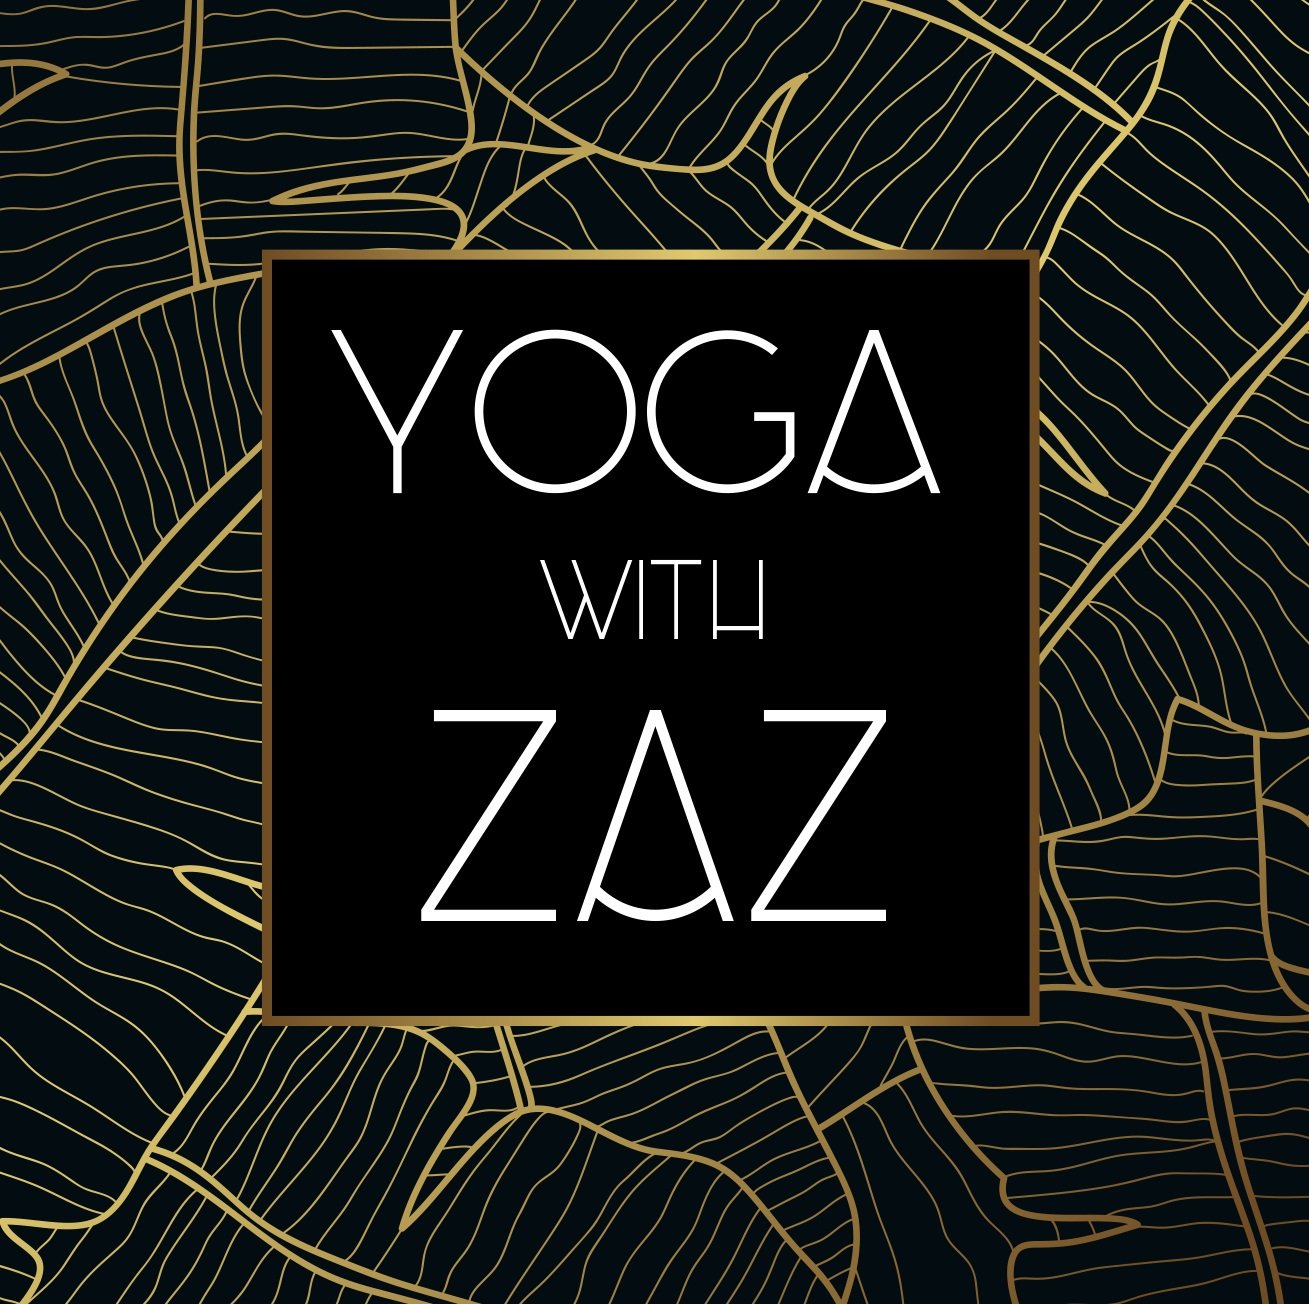 Yoga With Zaz